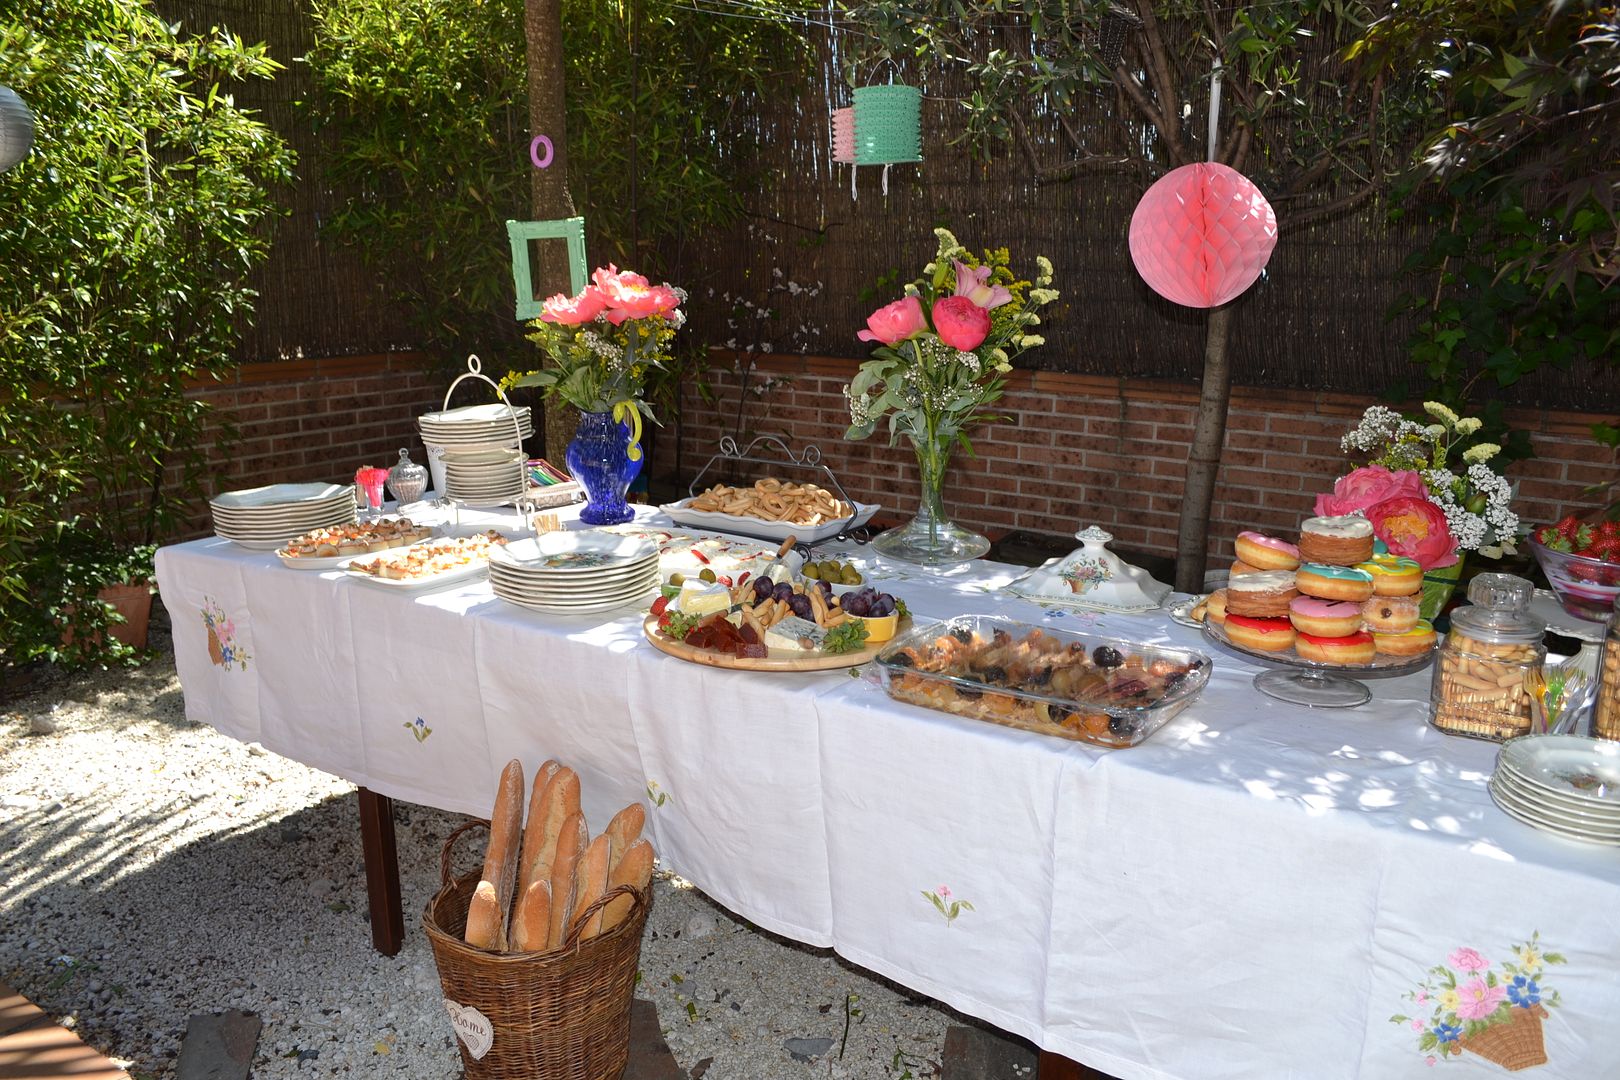  photo buffet-comida-celebracioacuten-terraza-jardiacuten-fiesta11_zpsd75cf3e9.jpg